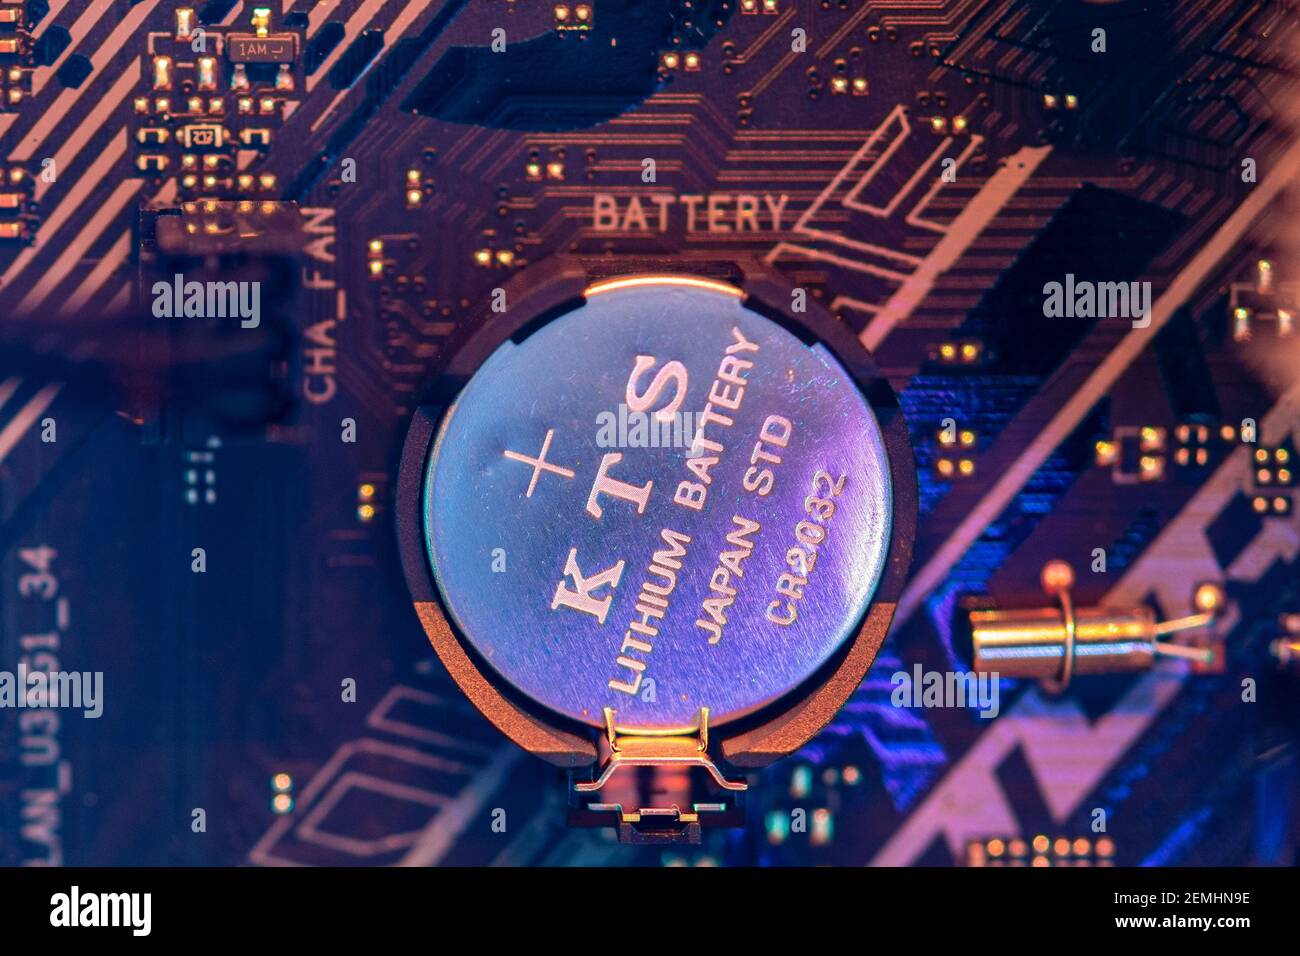 Lithium Batterie Stockfotos und -bilder Kaufen - Alamy